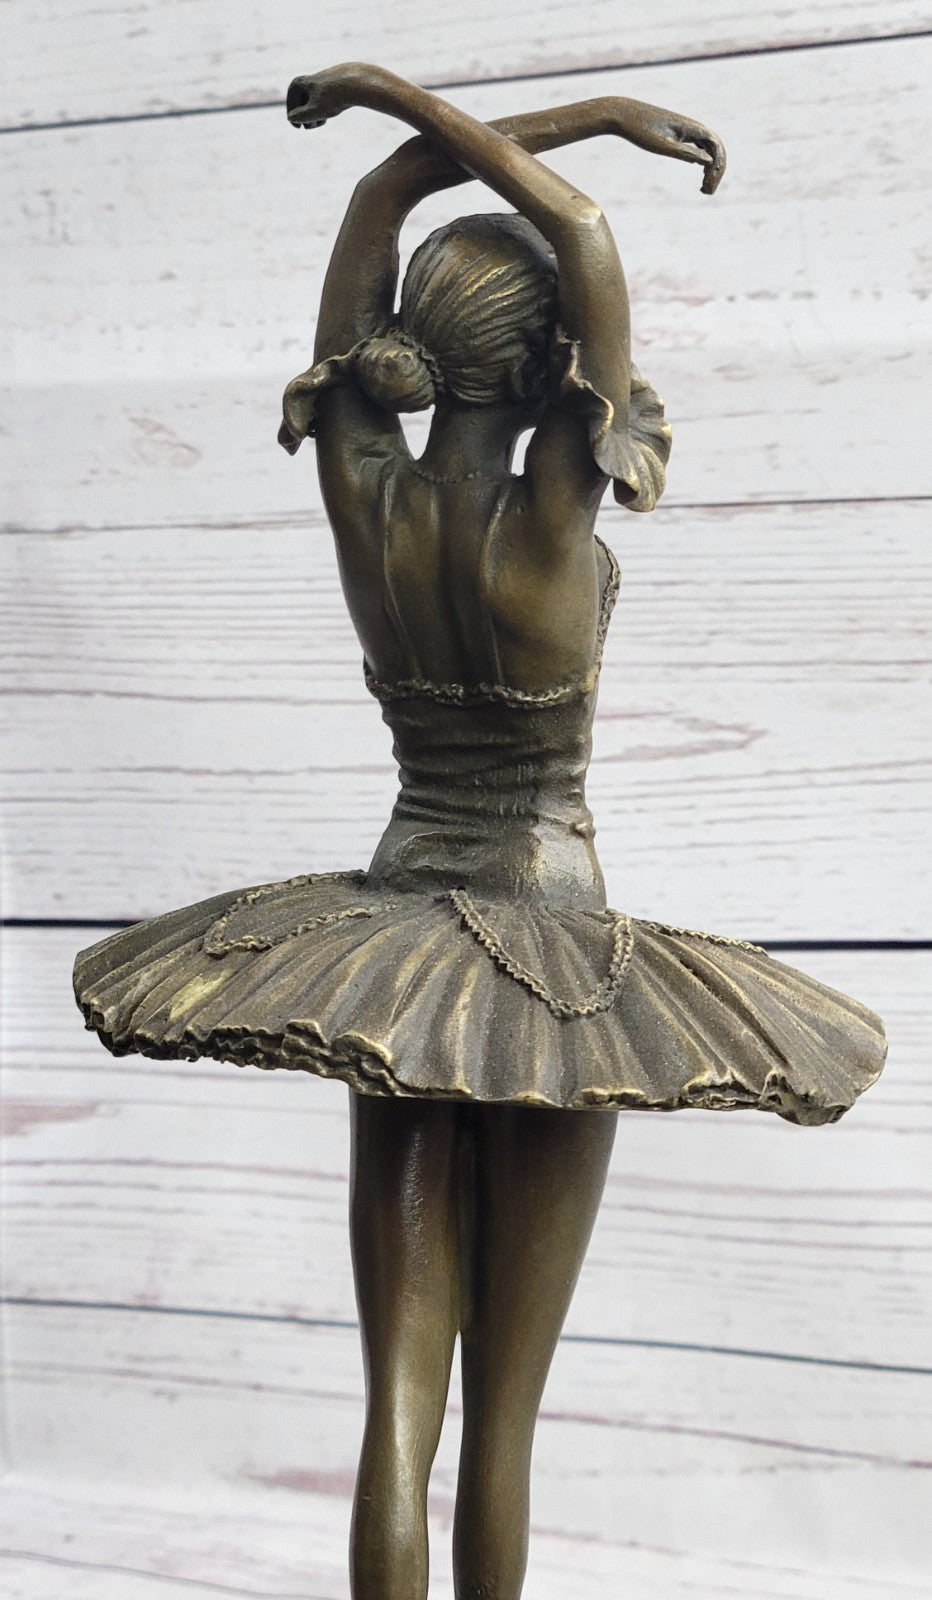 Bronze Handcrafted Art  Sculpture Prima Ballerina Dancer Ballet Statue Metal